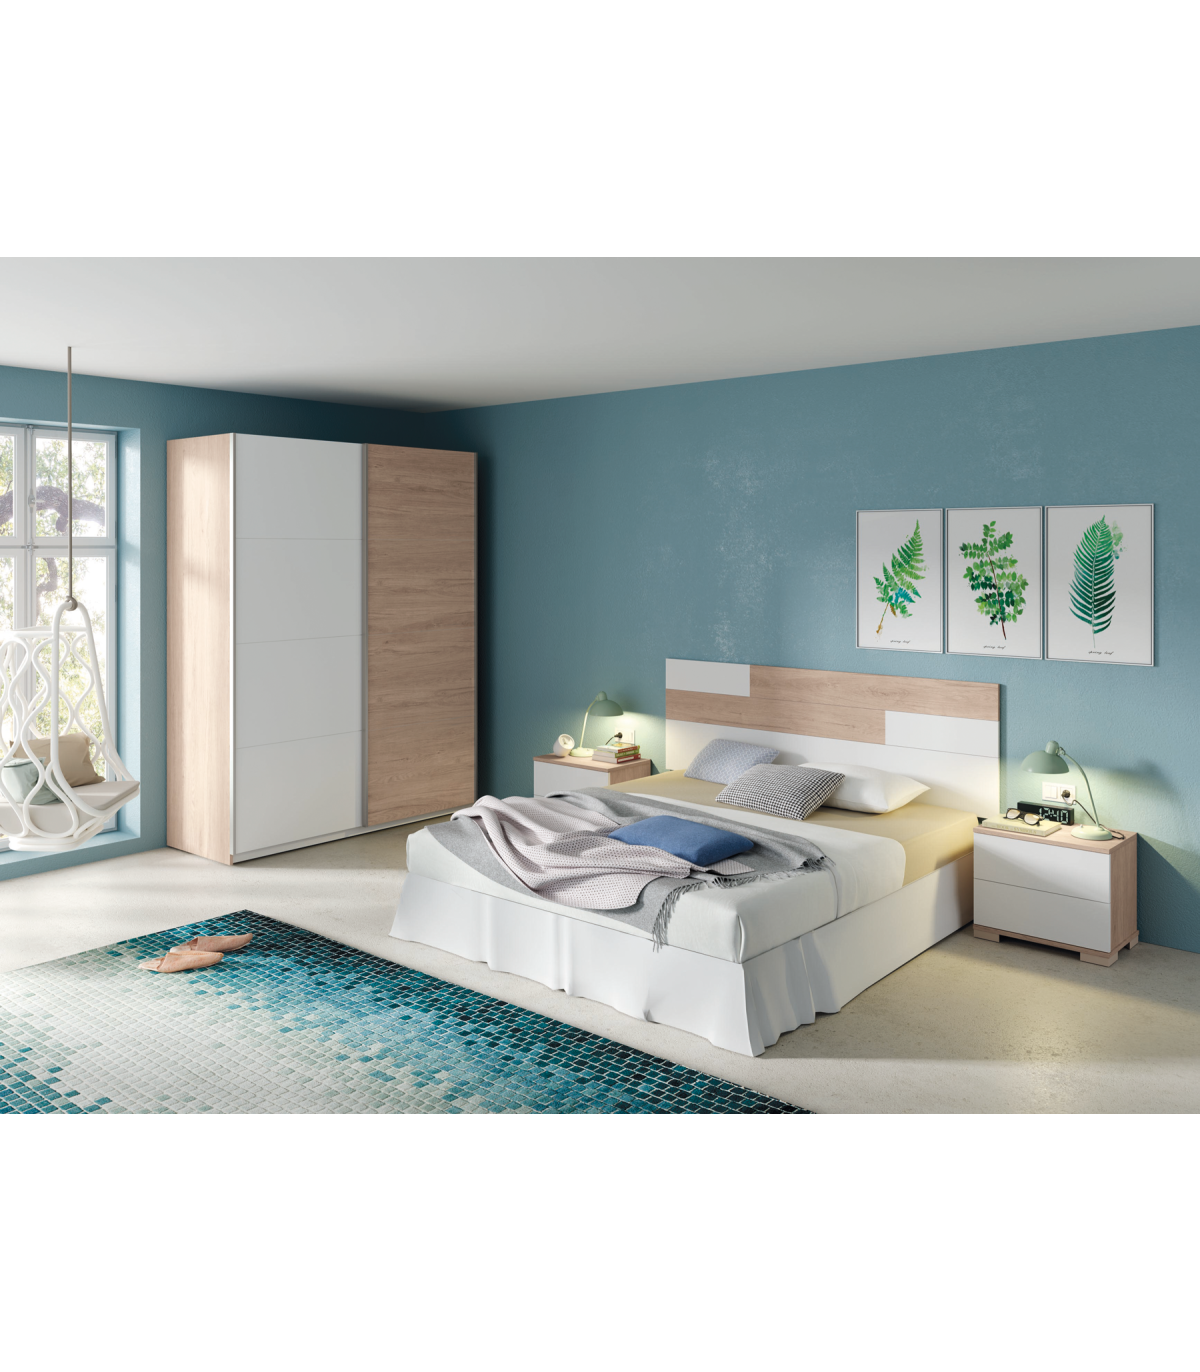 Armario ropero para dormitorio juvenil azul, blanco y pino